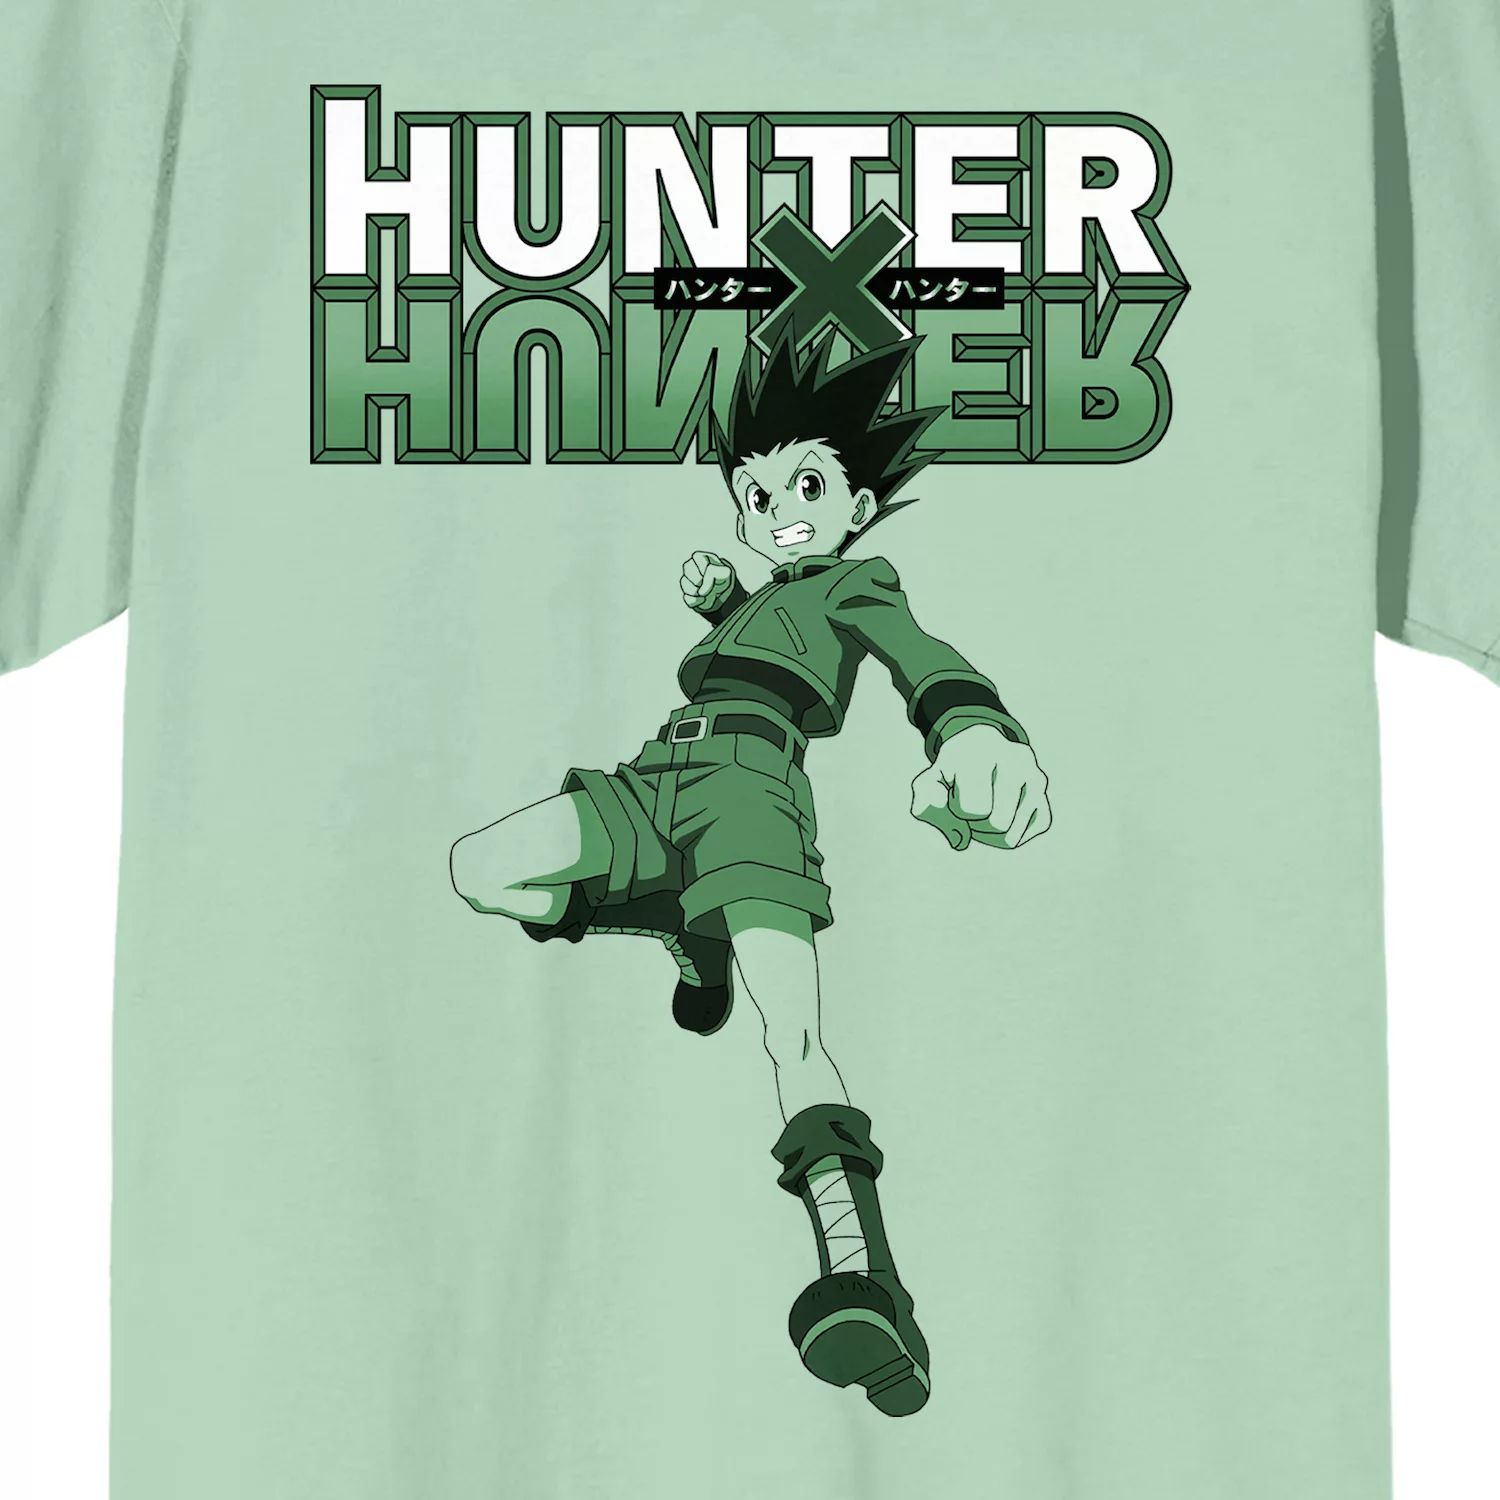 Мужская футболка Hunter x Hunter Gon Licensed Character худи killua gon freecss hunter x hunter женский топ с капюшоном женская толстовка с длинным рукавом аниме осенние повседневные уличные топы